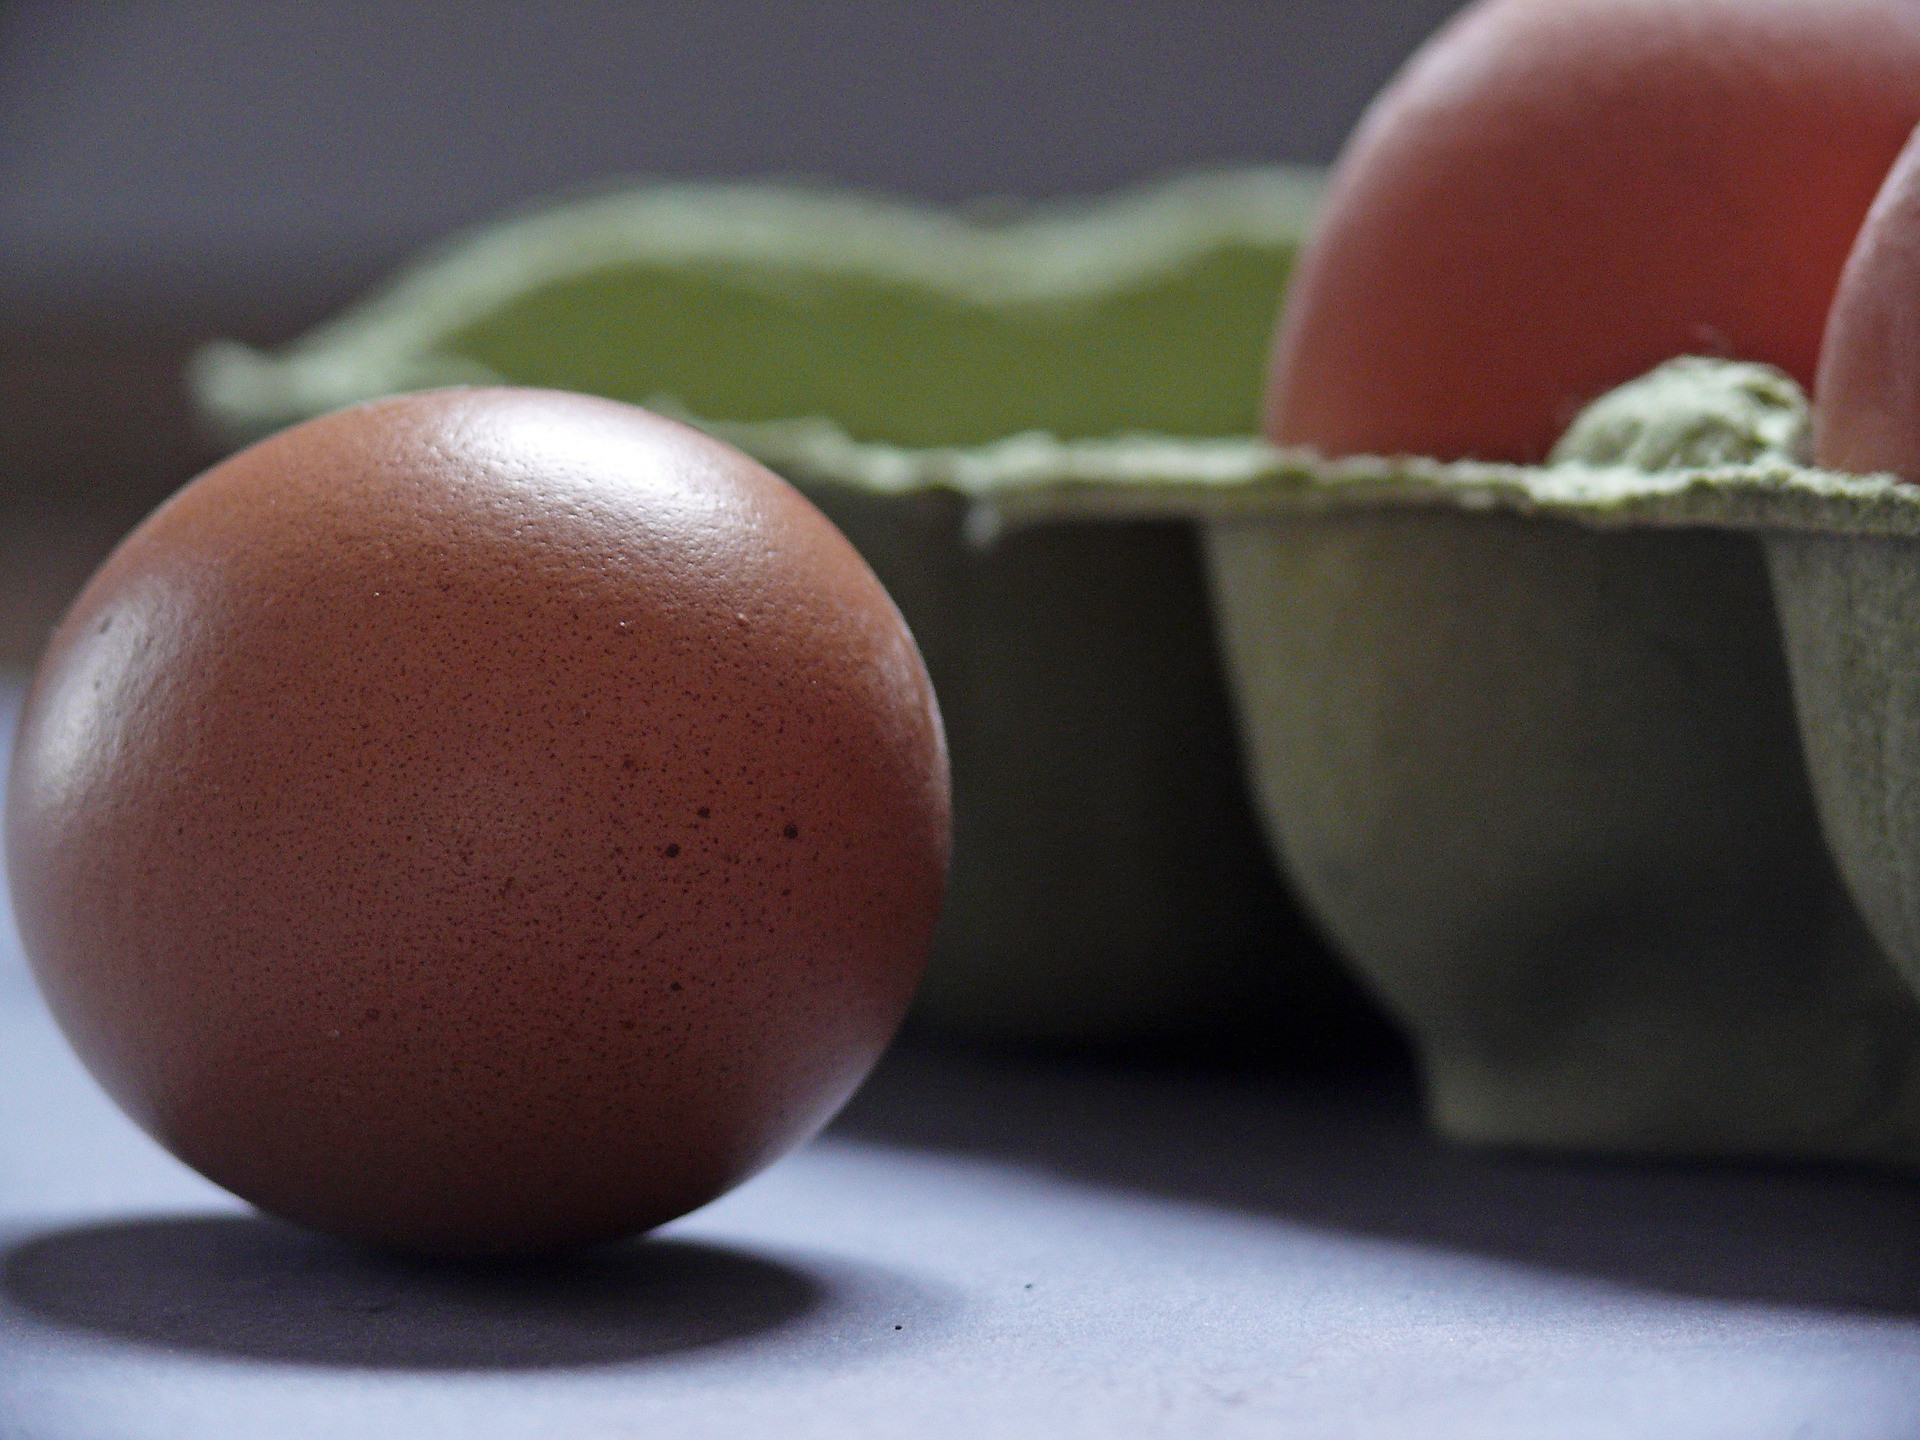 Fakt: Vajcia môžu voňať a chutiť dobre a aj tak byť napadnuté salmonelou. Baktérie na škrupine sa môžu tiež dostať do pripraveného jedla. Zahoďte popraskané alebo znečistené vajcia. Udržujte ruky, riady a povrchy čisté a suché. Ak má vajce nepríjemný zápach, nepoužívajte ho.